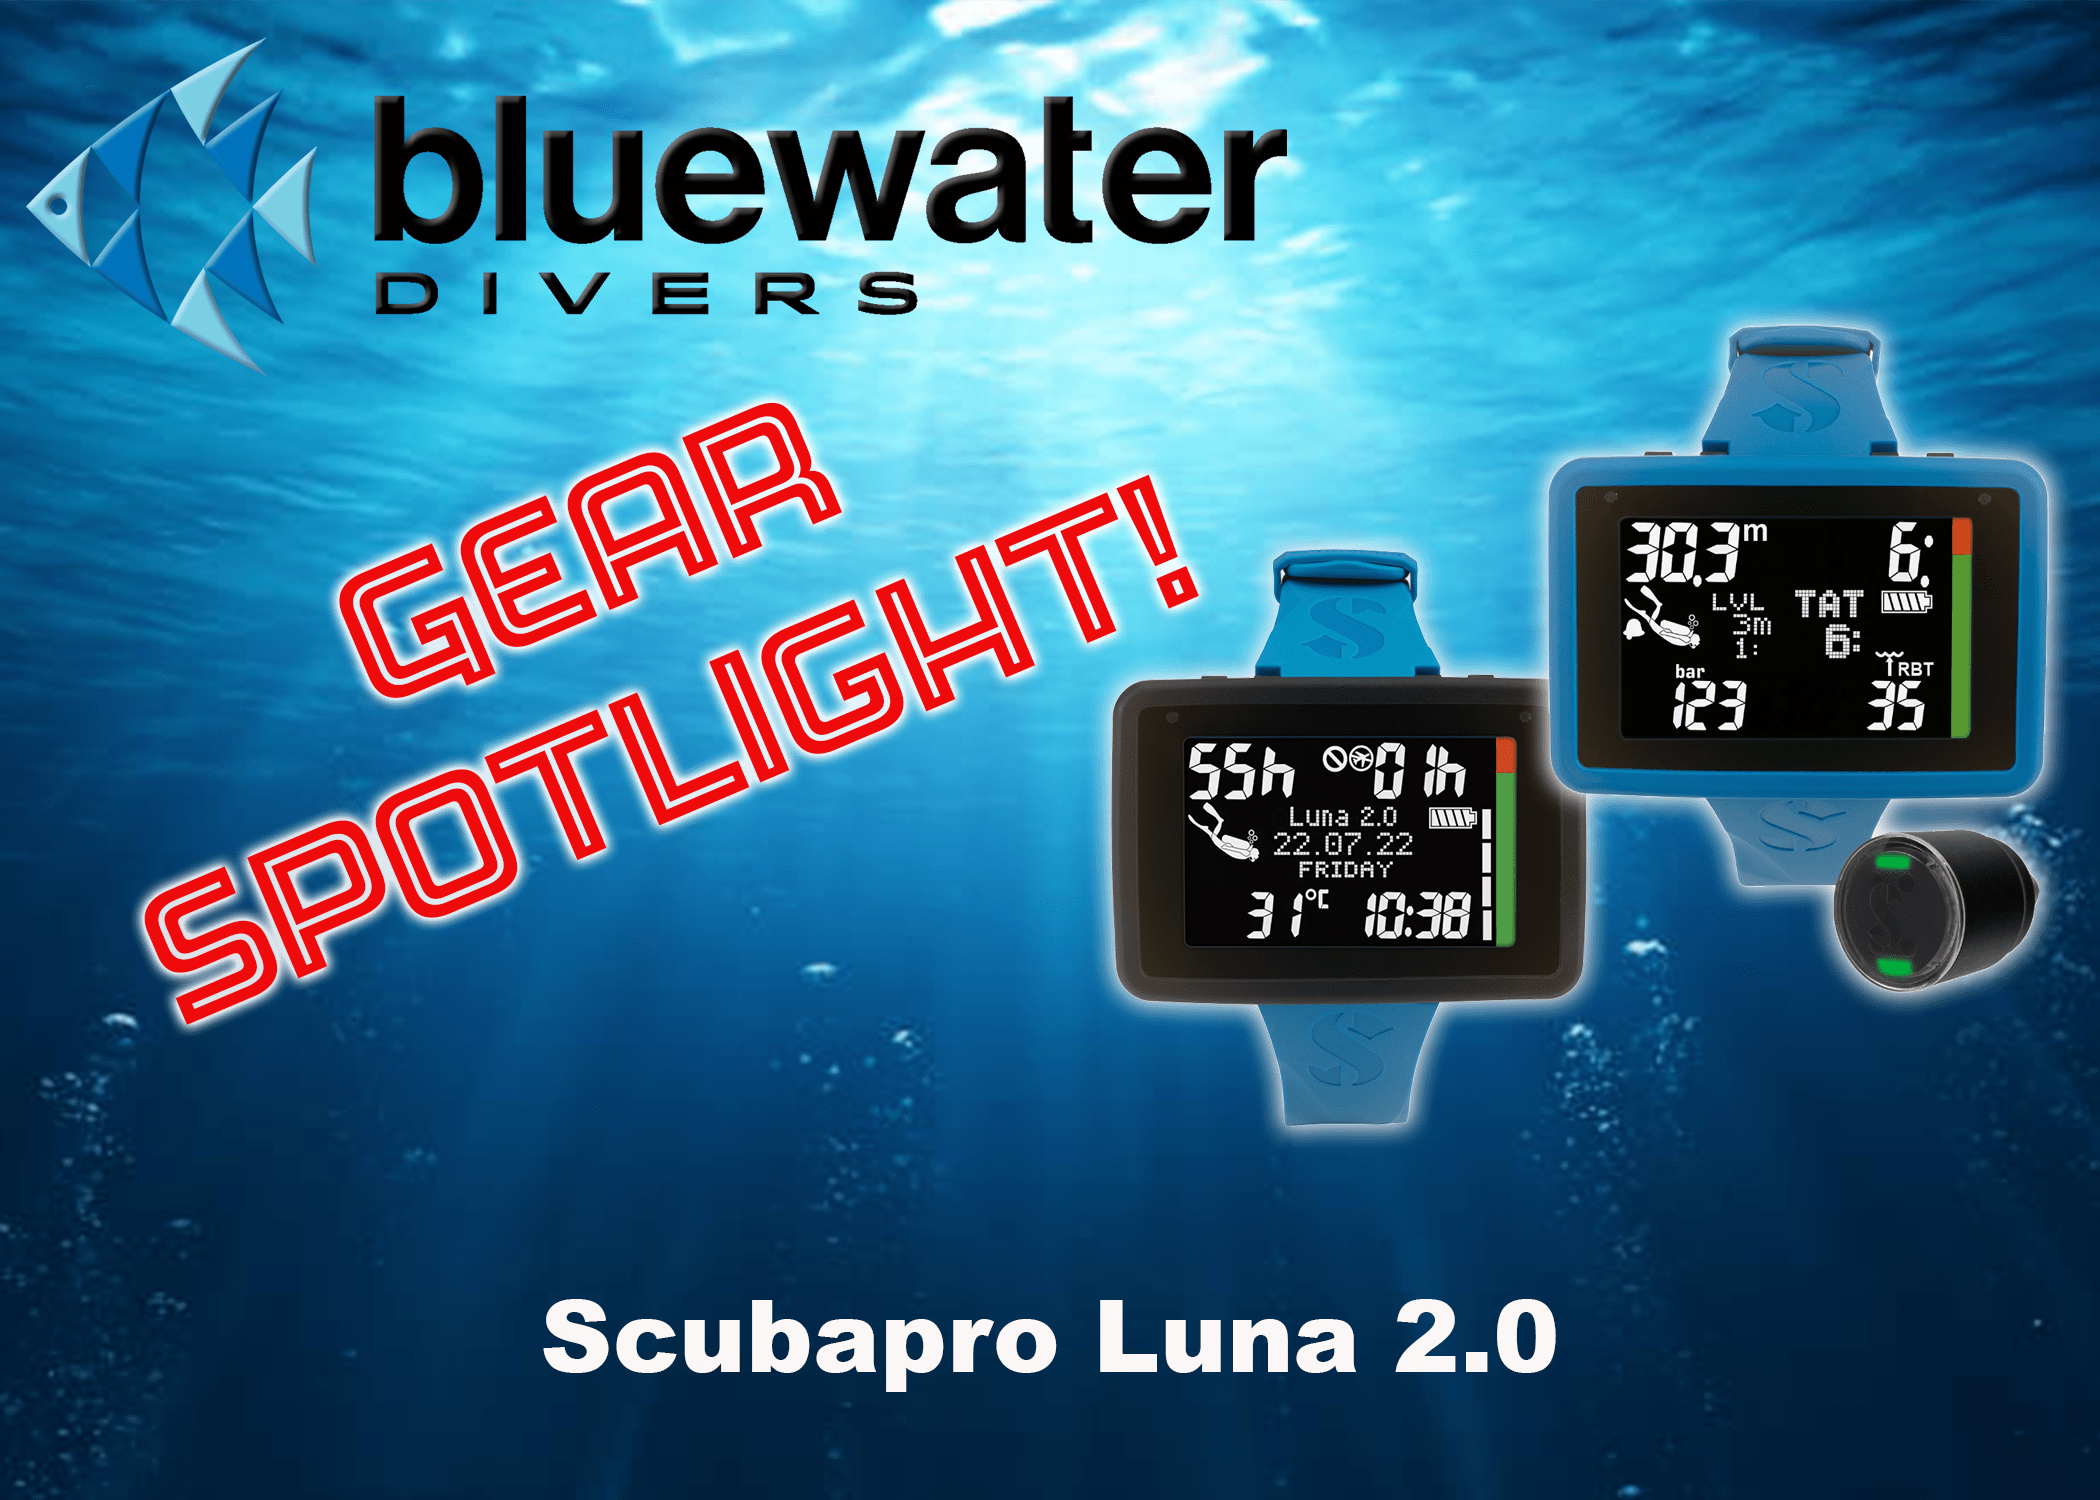 Bluewater Divers Oklahoma's Dive Shop Scubapro Luna 2.0